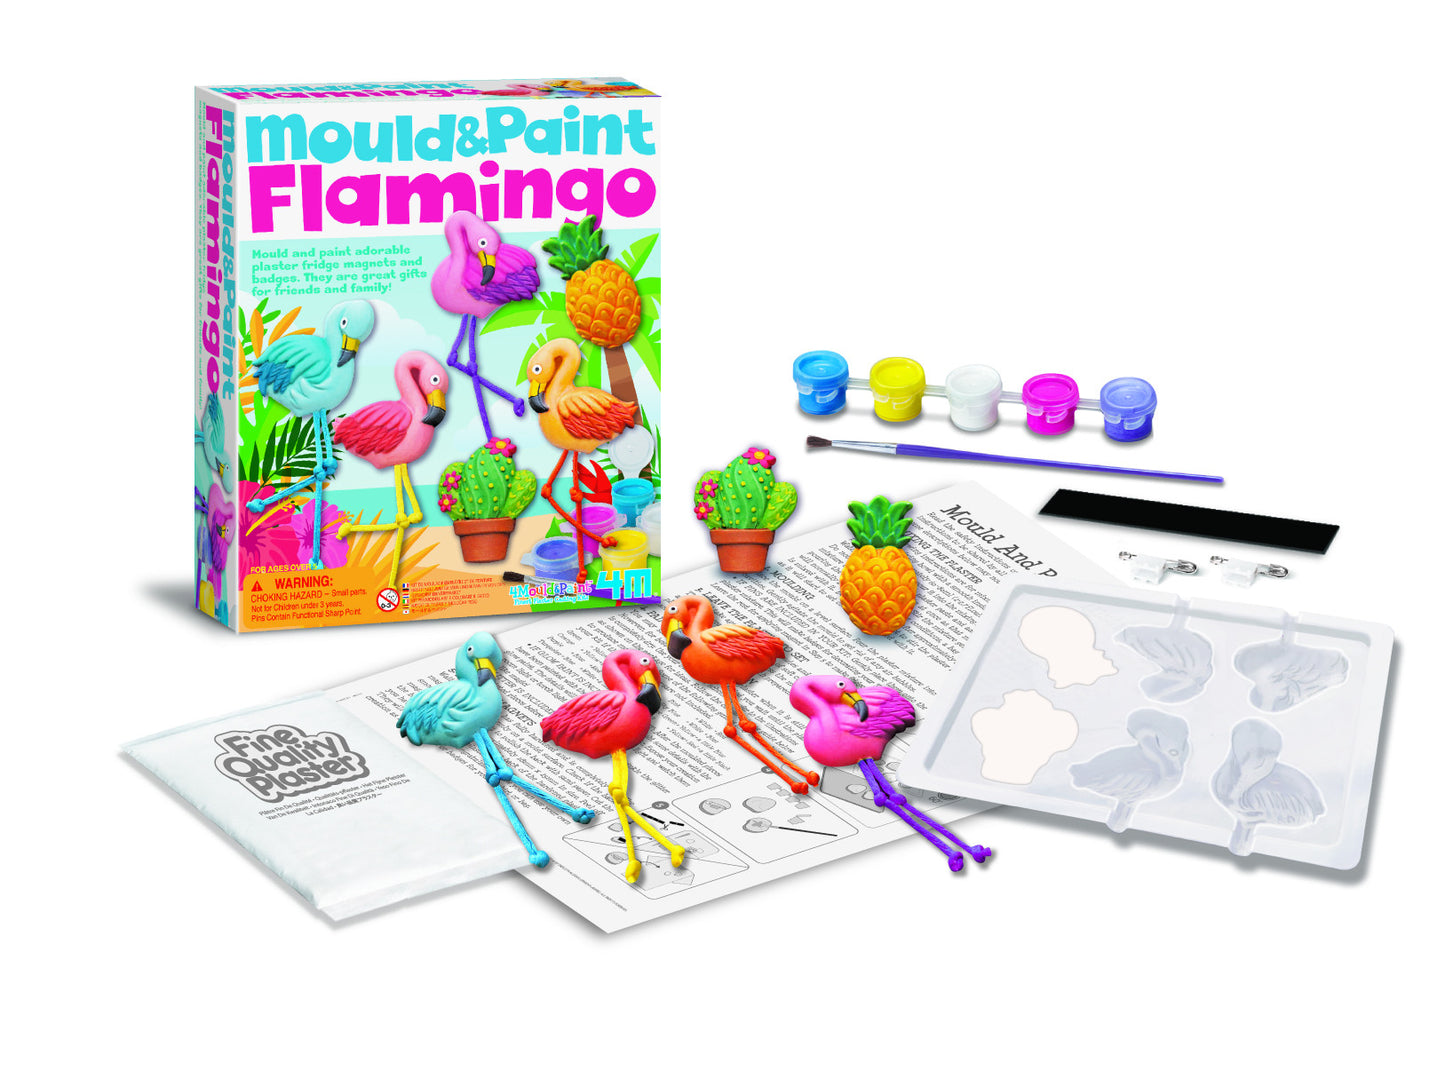 kidz-stuff-online - 4M Mould & Paint Flamingo